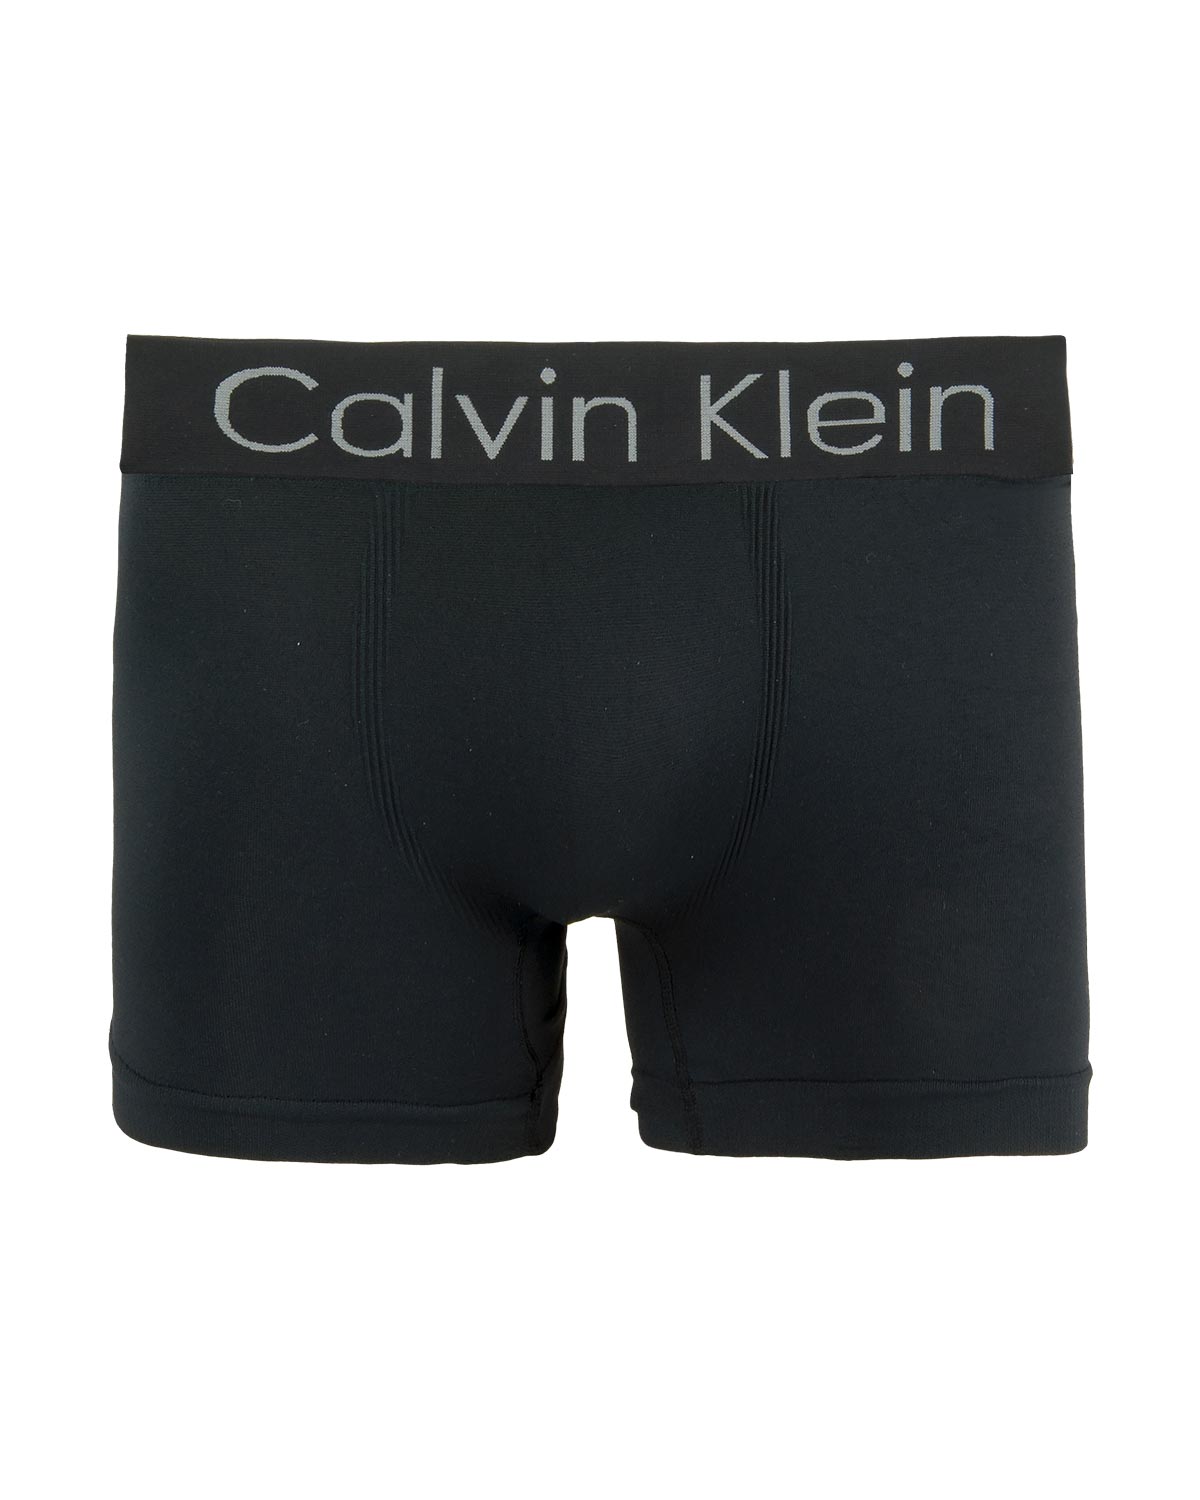 Cueca Calvin Klein Boxer Sem Costura Poliamida - PijamaOnline